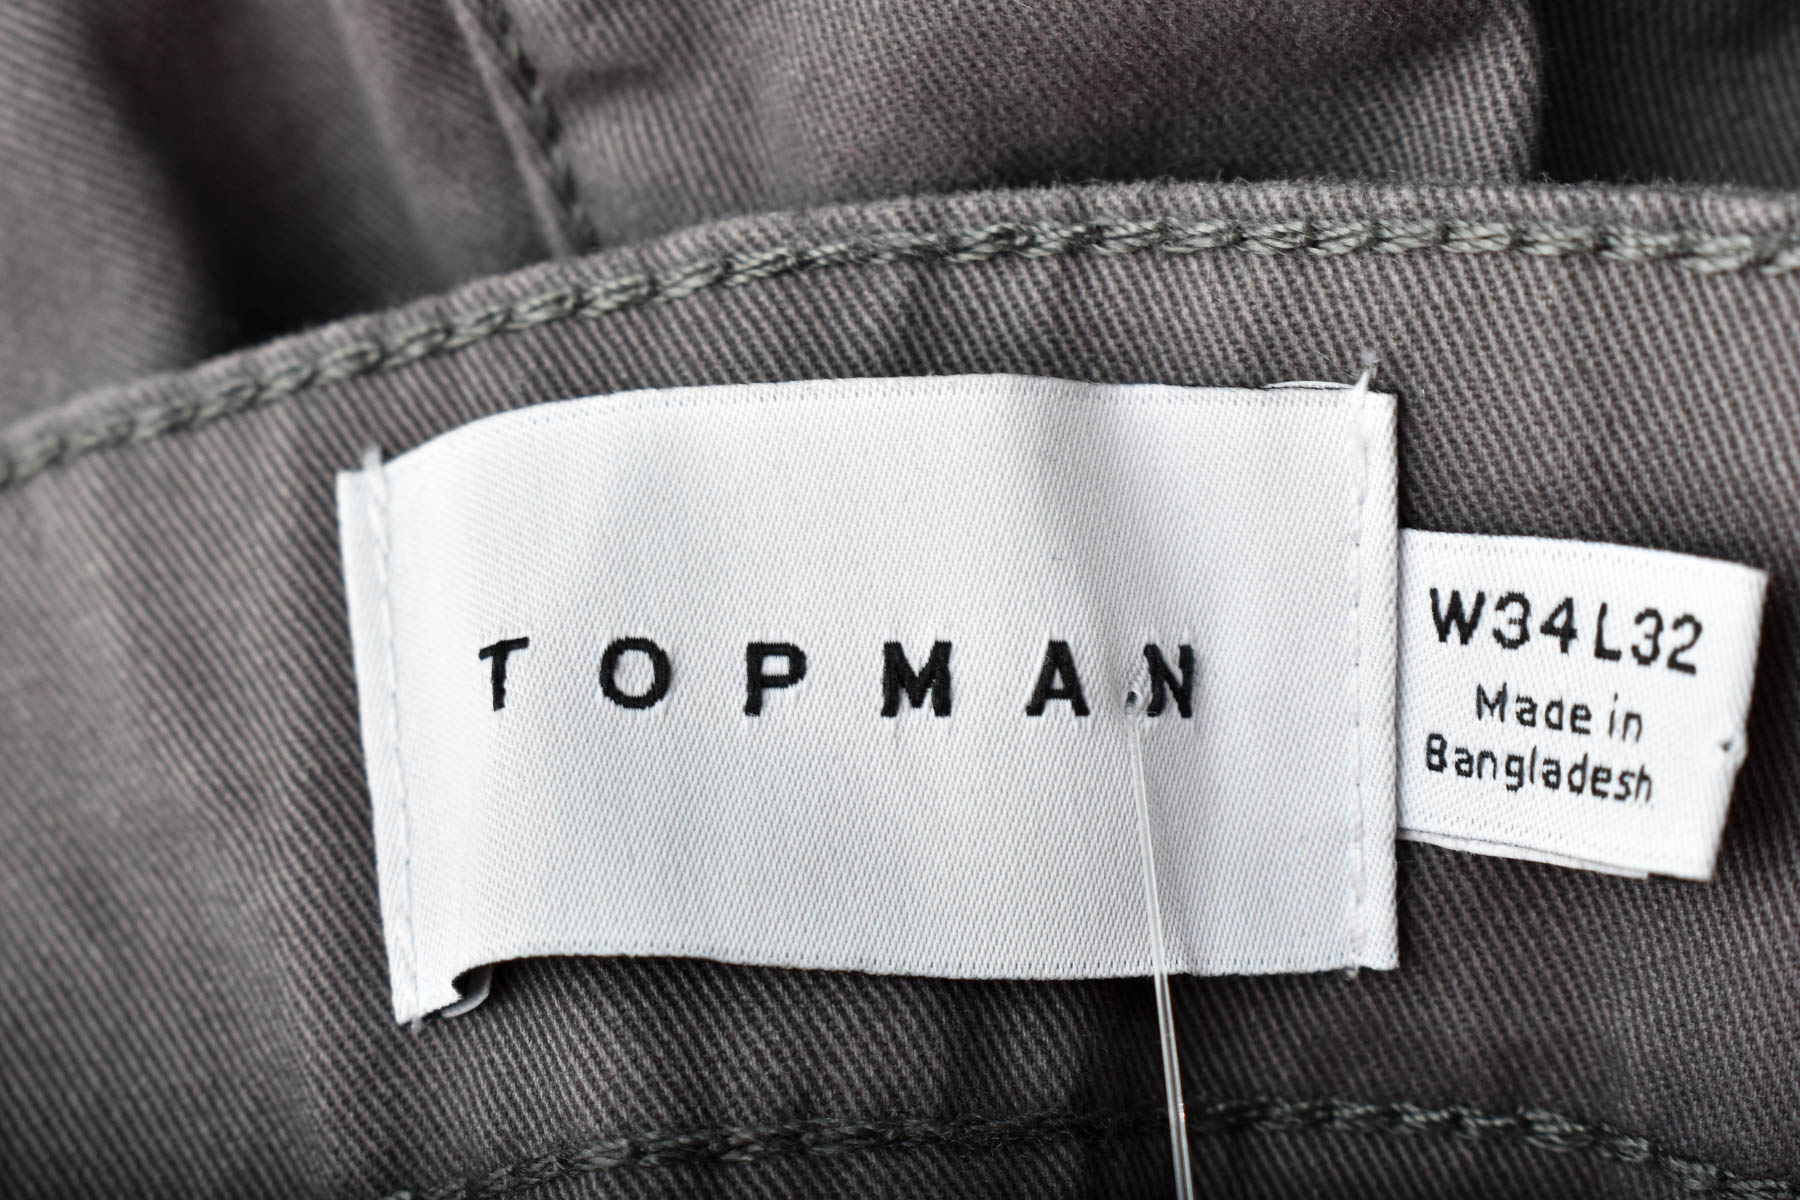 Men's trousers - TOPMAN - 2